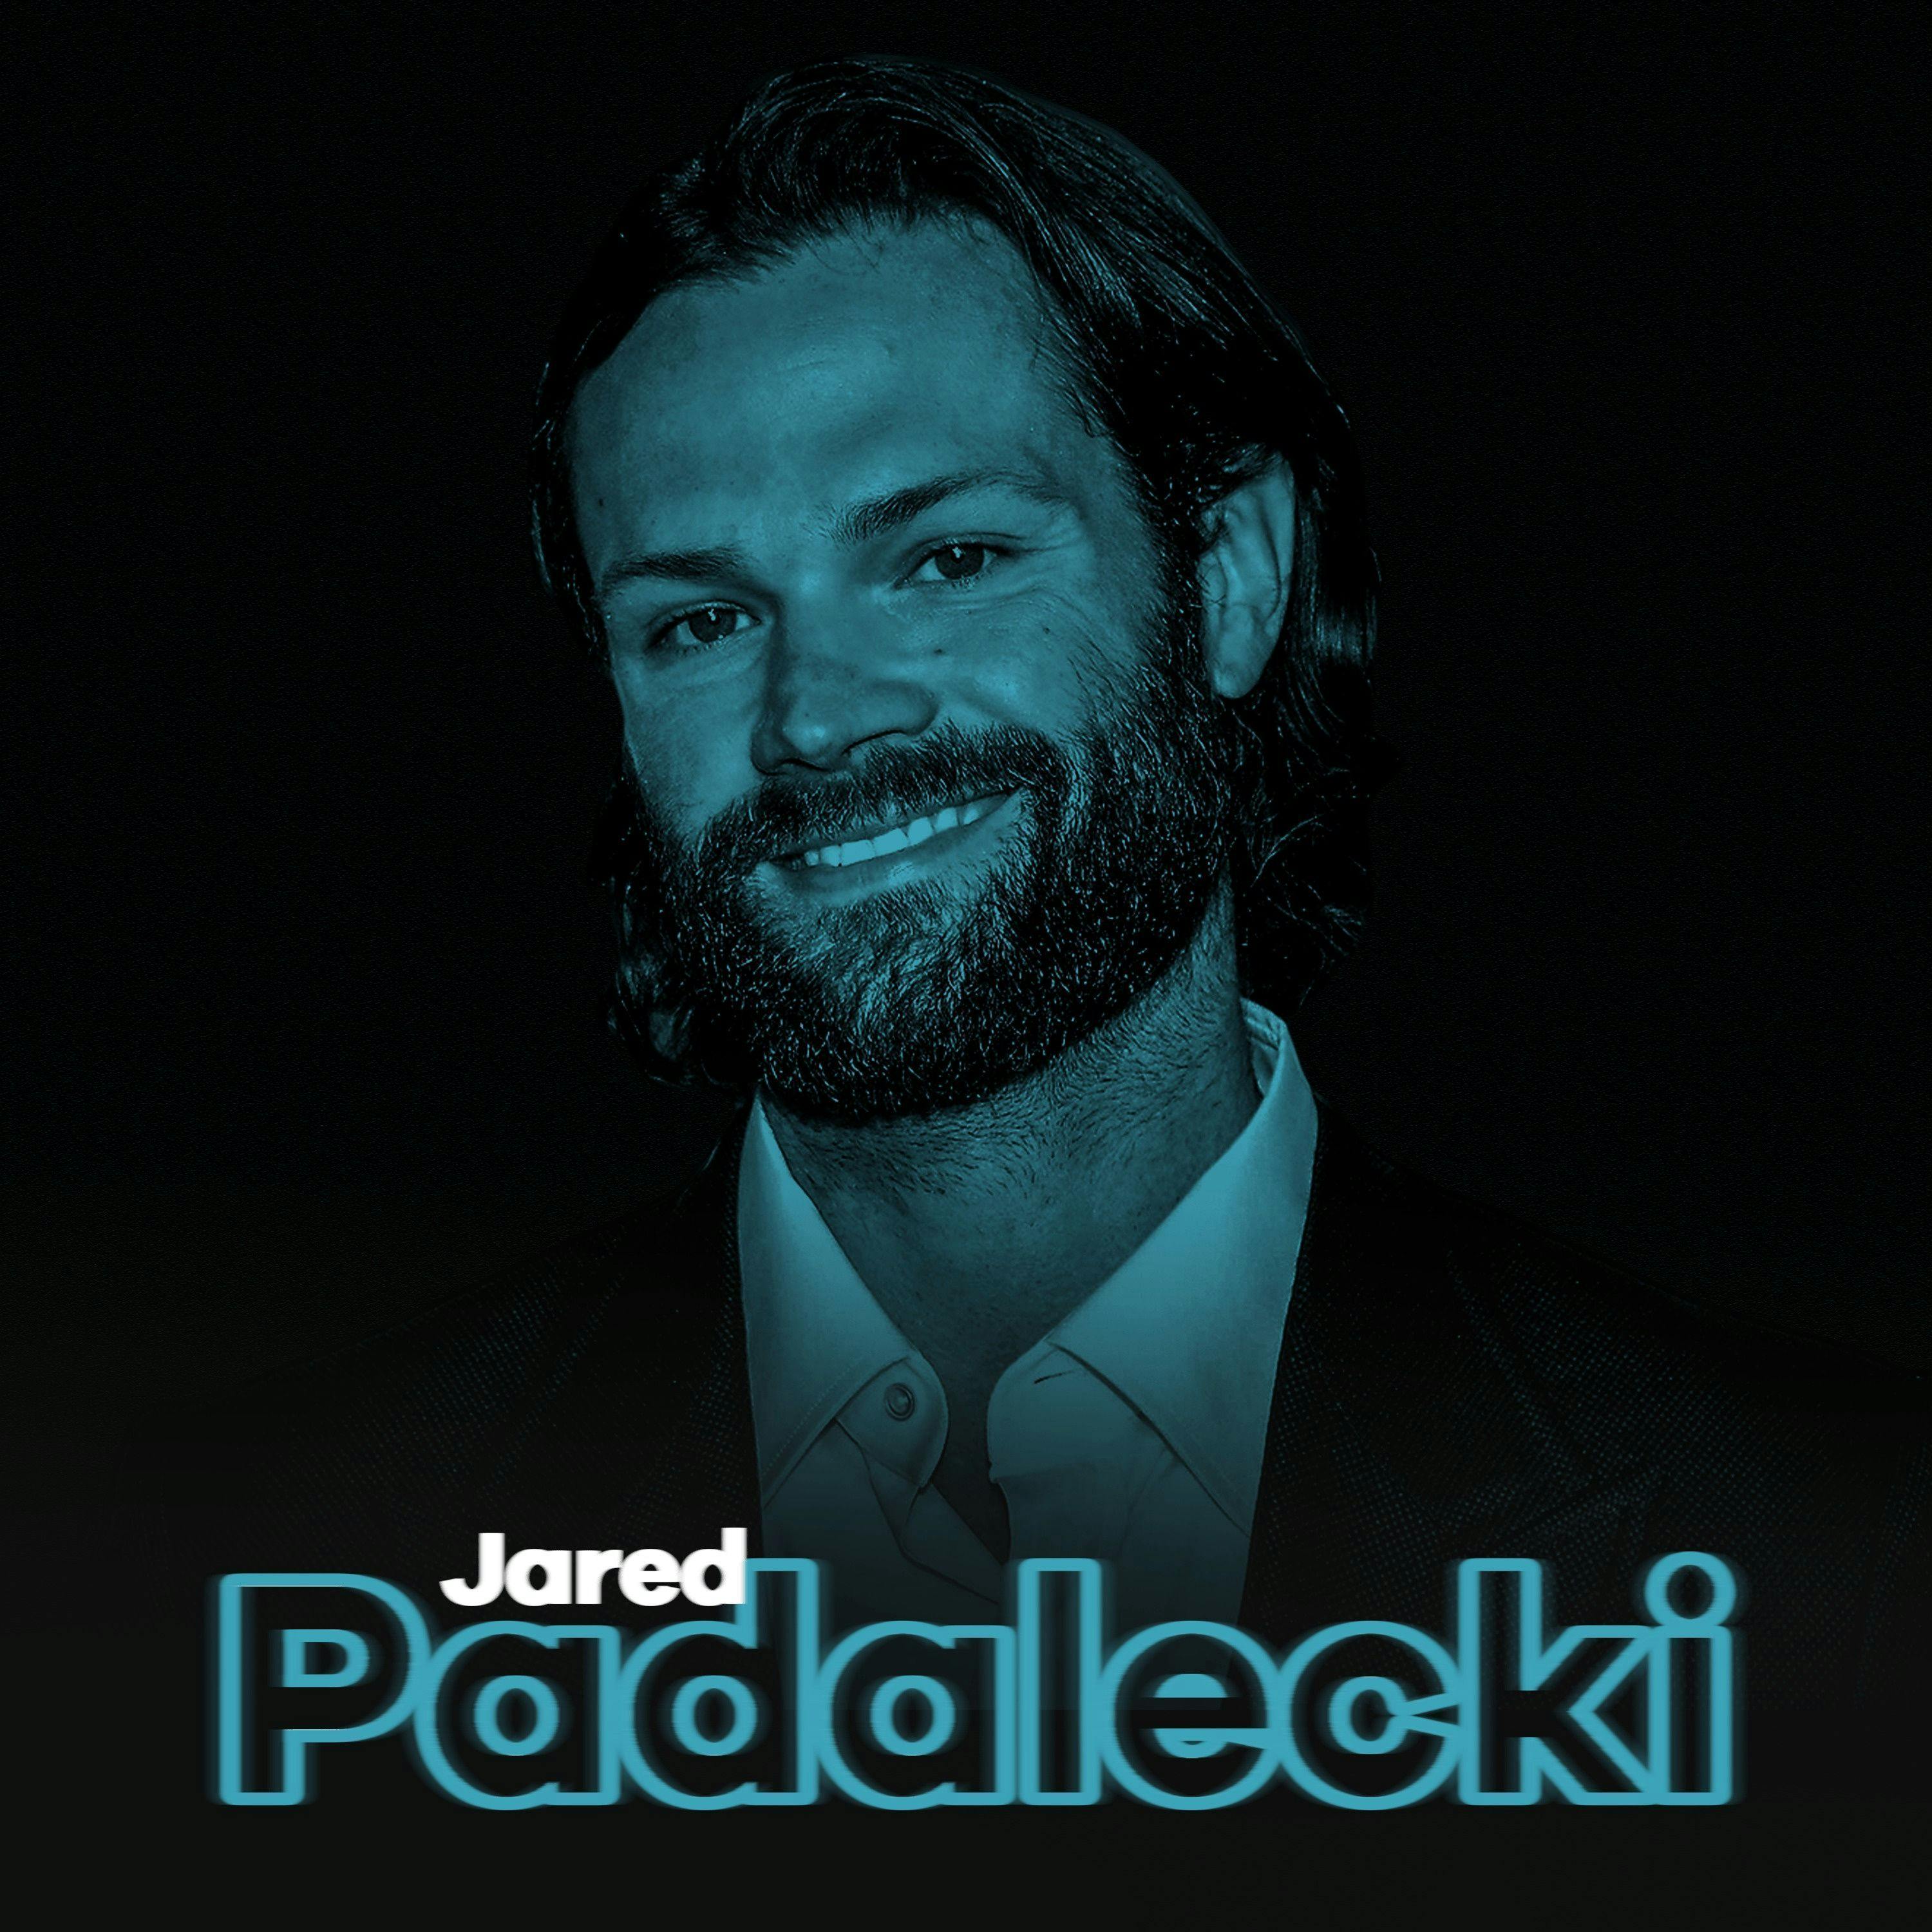 Jared Padalecki